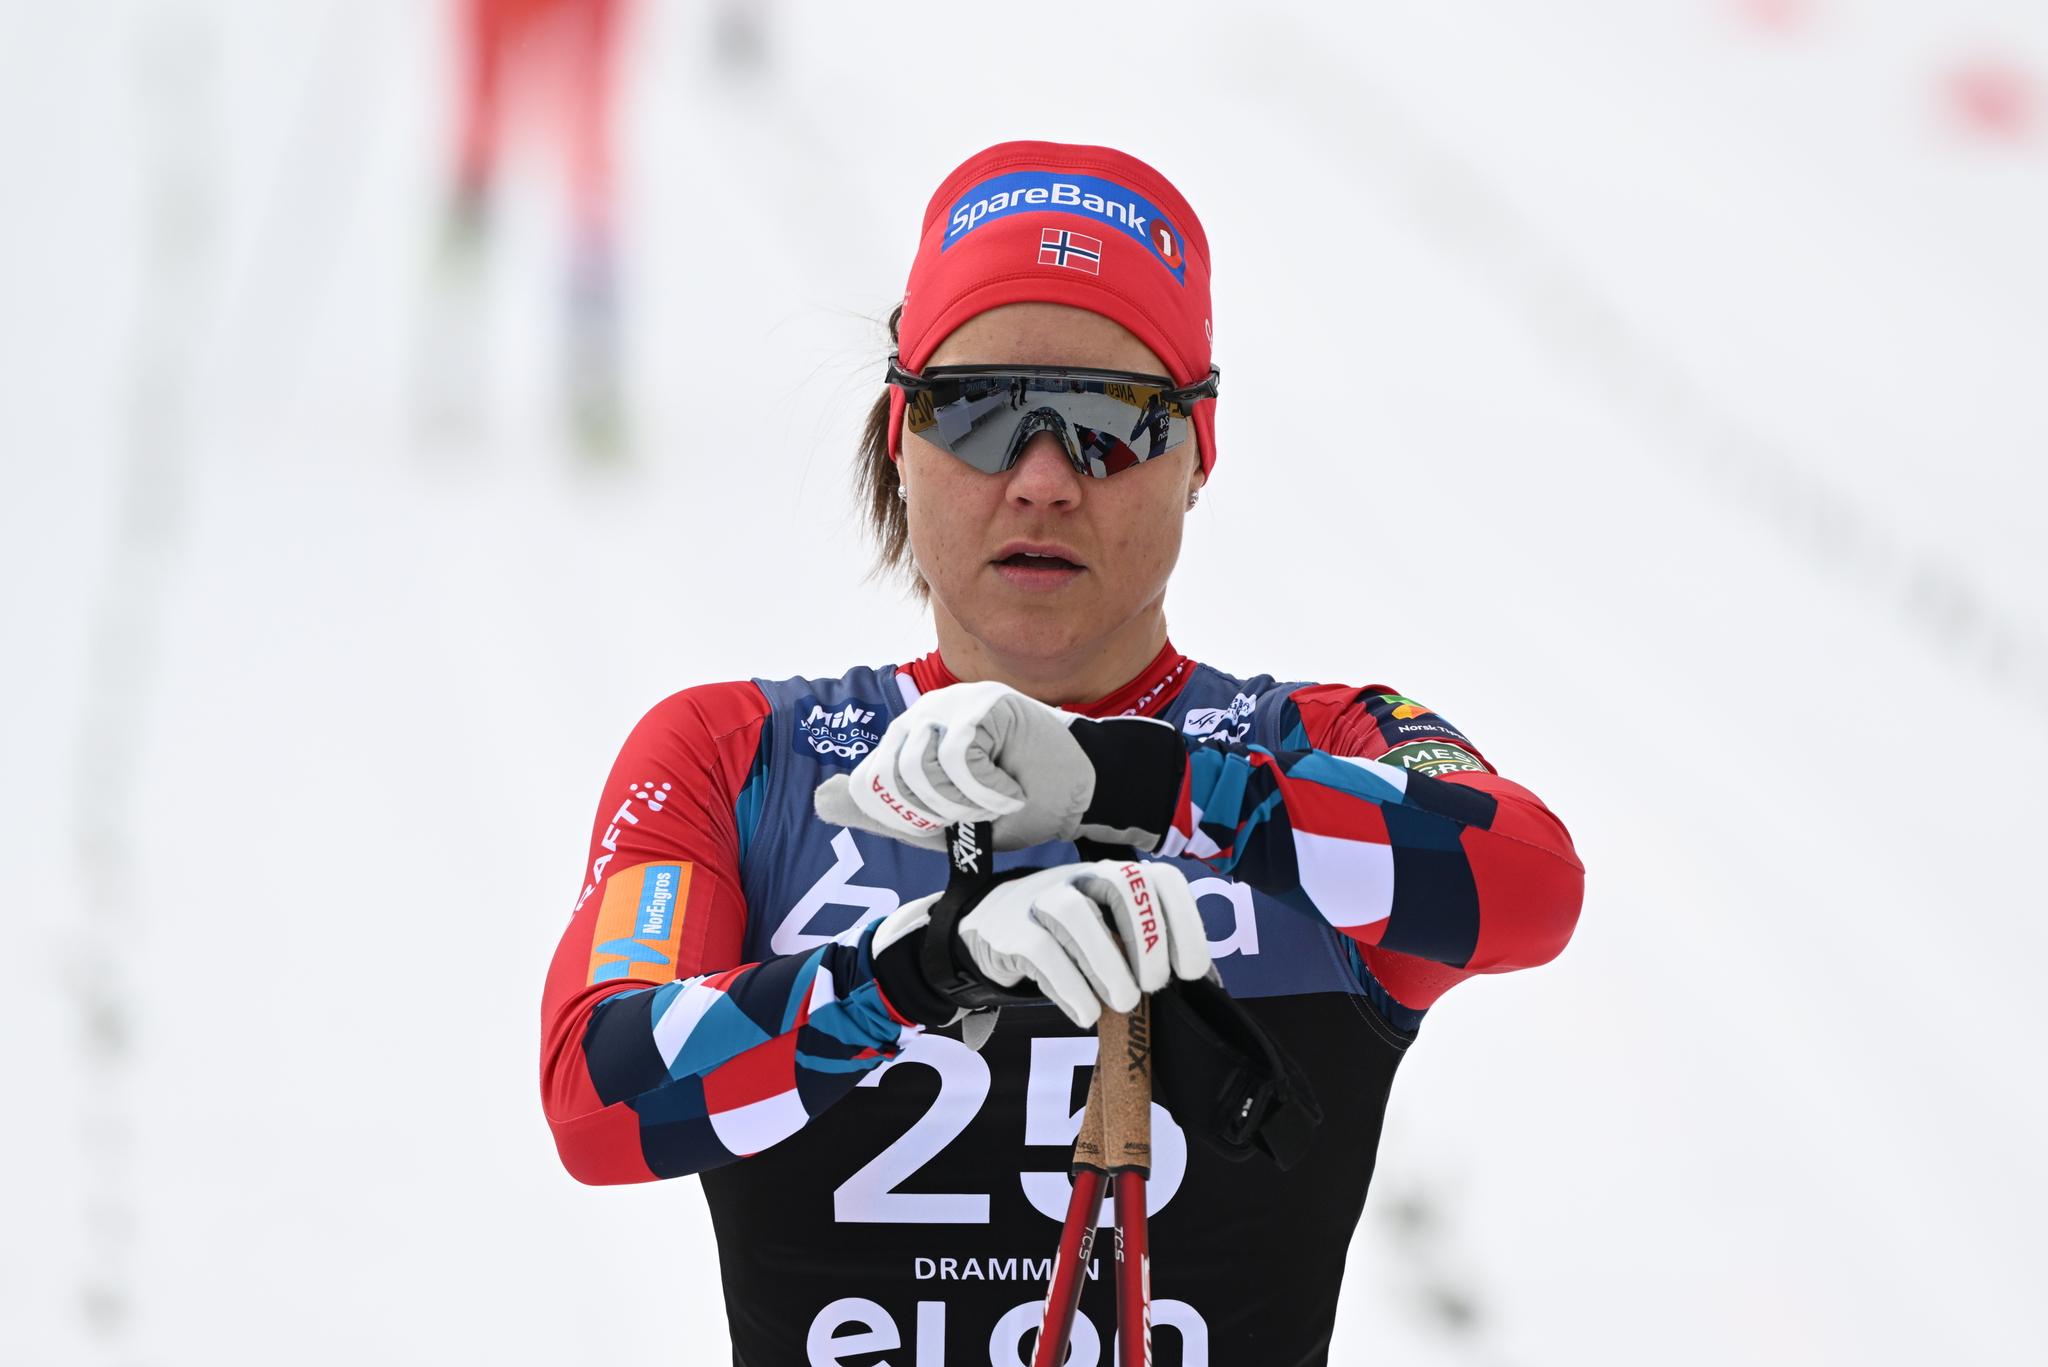  Ane Appelkvist Stenseth, her under verdenscupen i Drammen tidligere i mars.